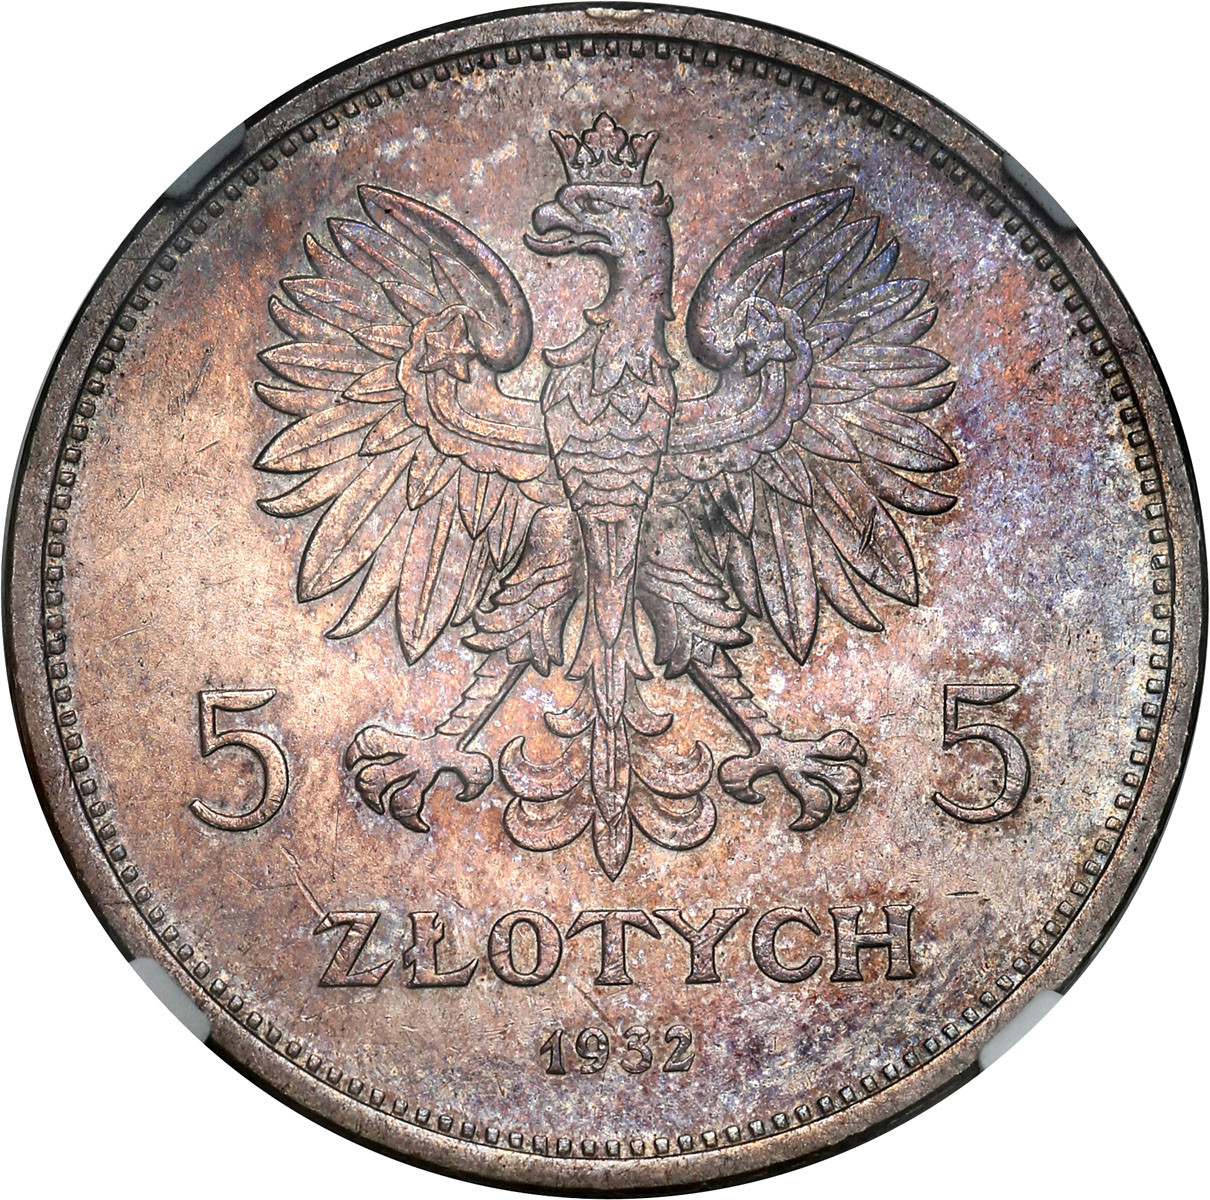 5 złotych 1932 Nike NGC MS61 Najrzadsza moneta obiegowa II RP – PIĘKNA i RZADKA